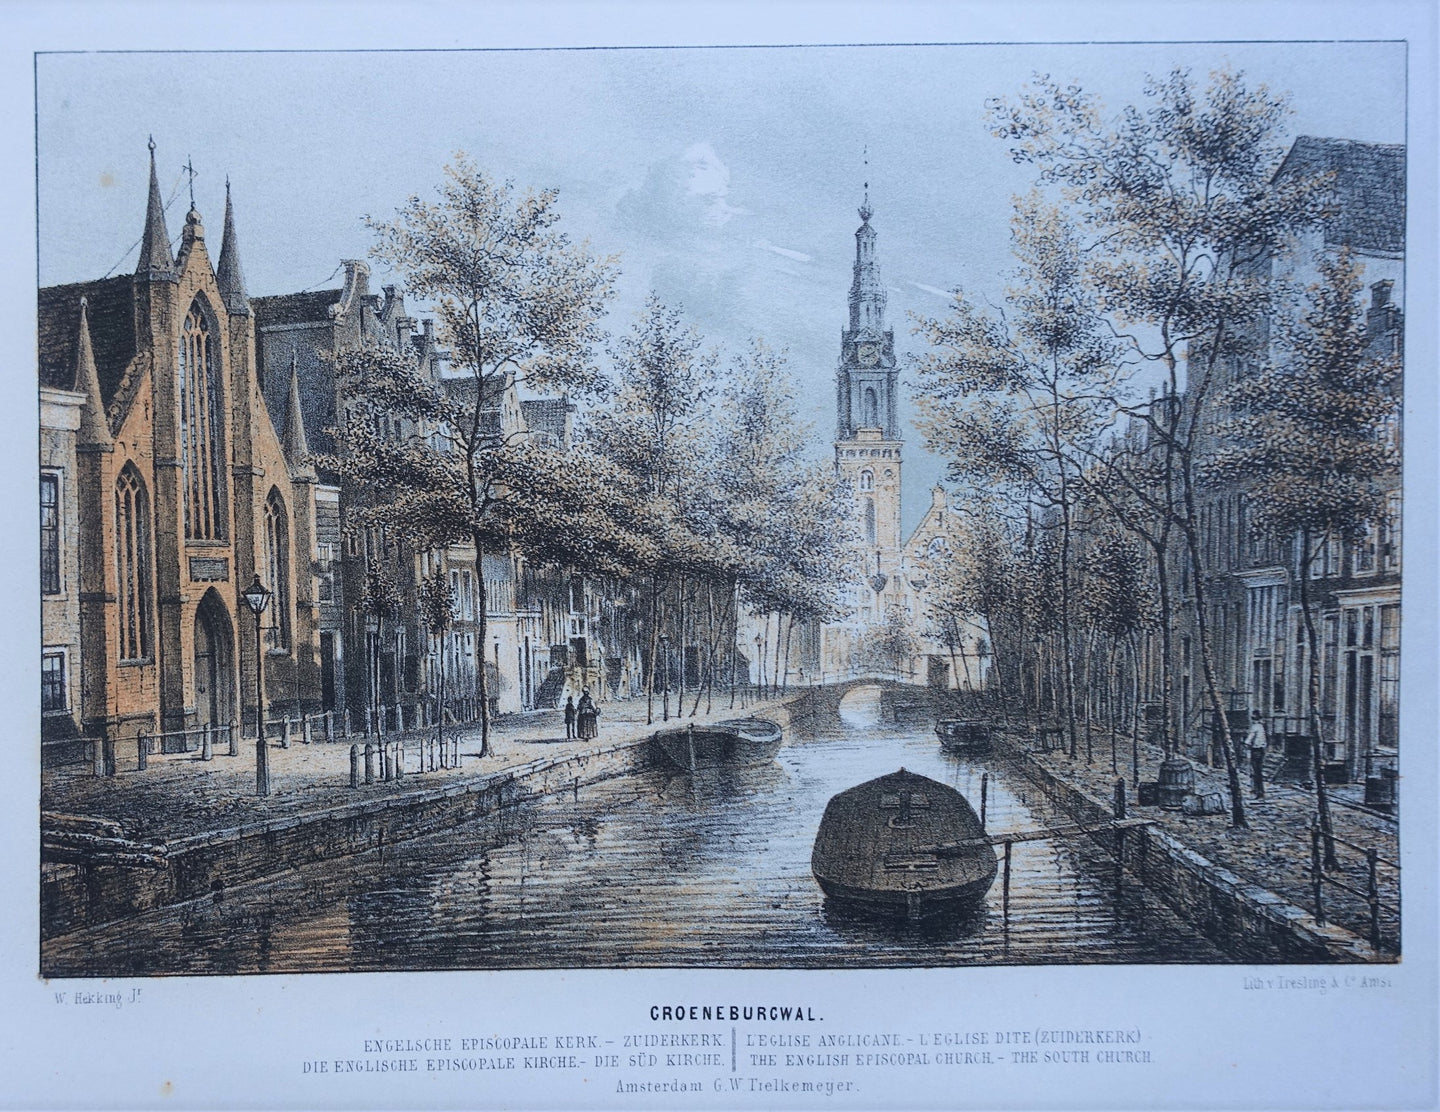 Amsterdam Groenburgwal Zuiderkerk - W Hekking jr/ GW Tielkemeijer - 1869